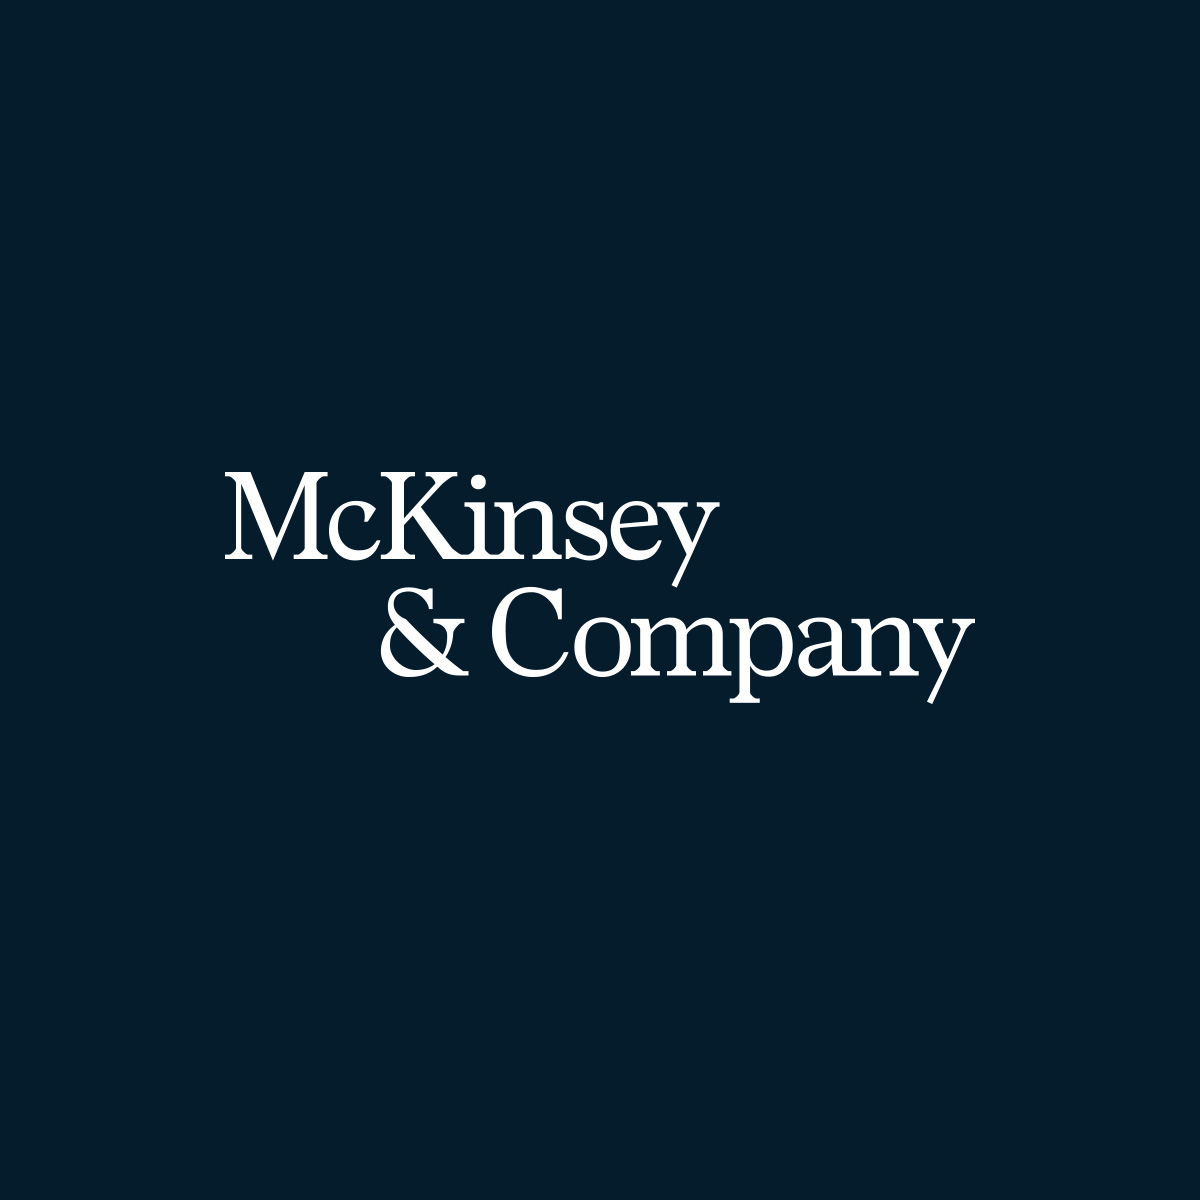 Kontakt Deutschland Mckinsey Company